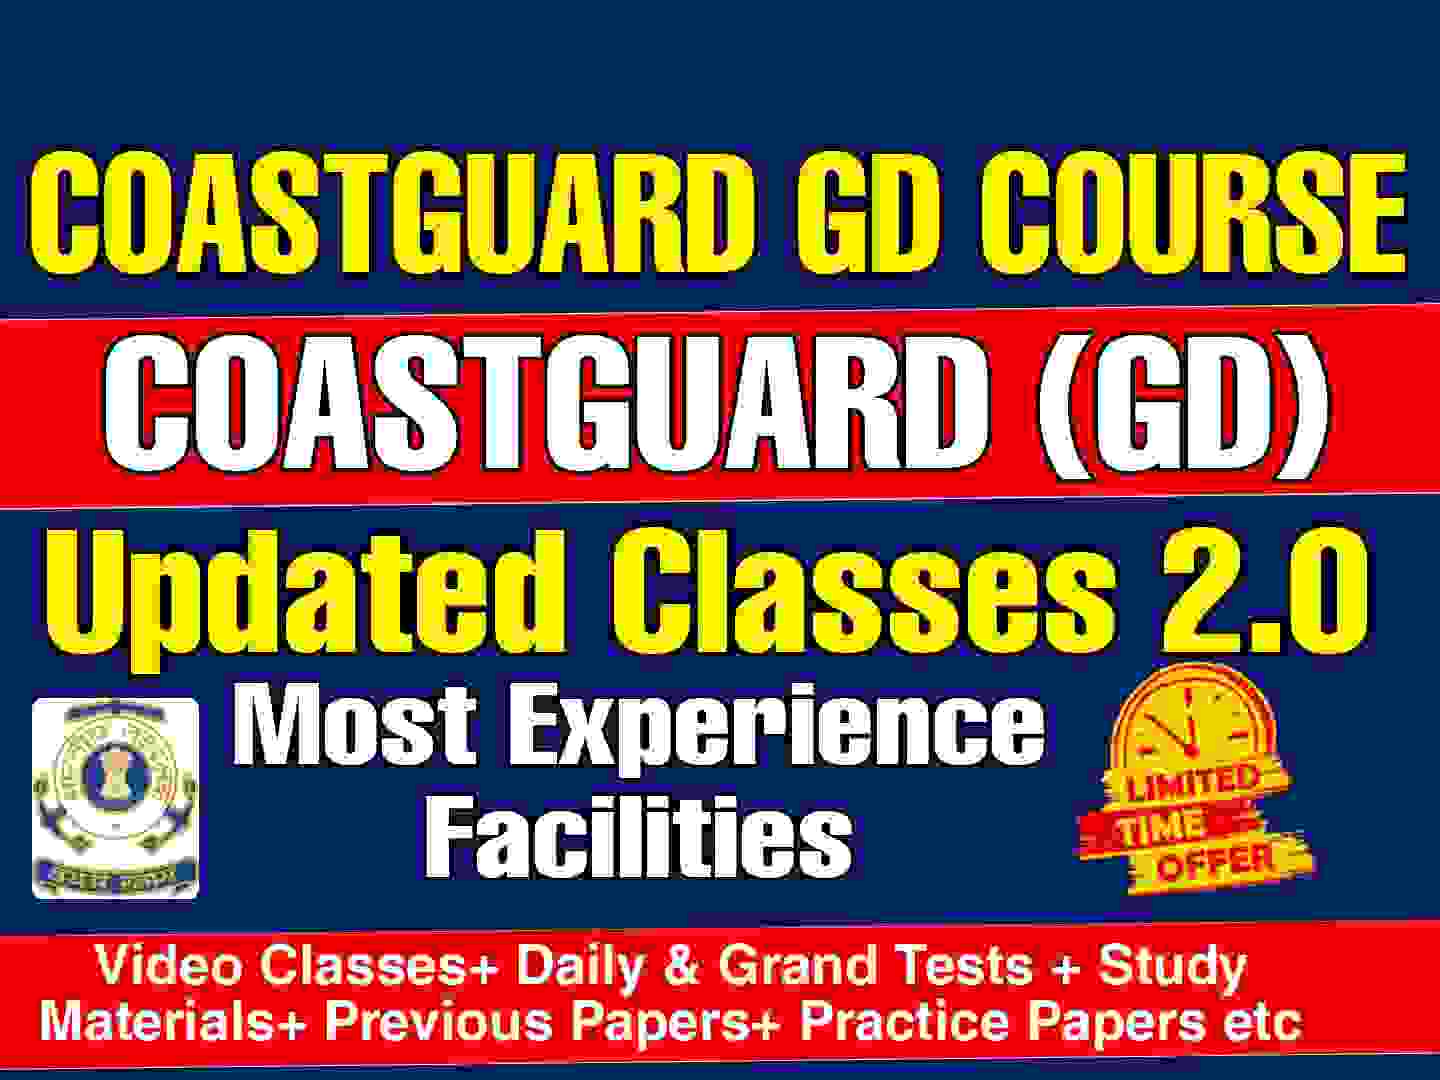 Coastguard GD Best Online Coaching